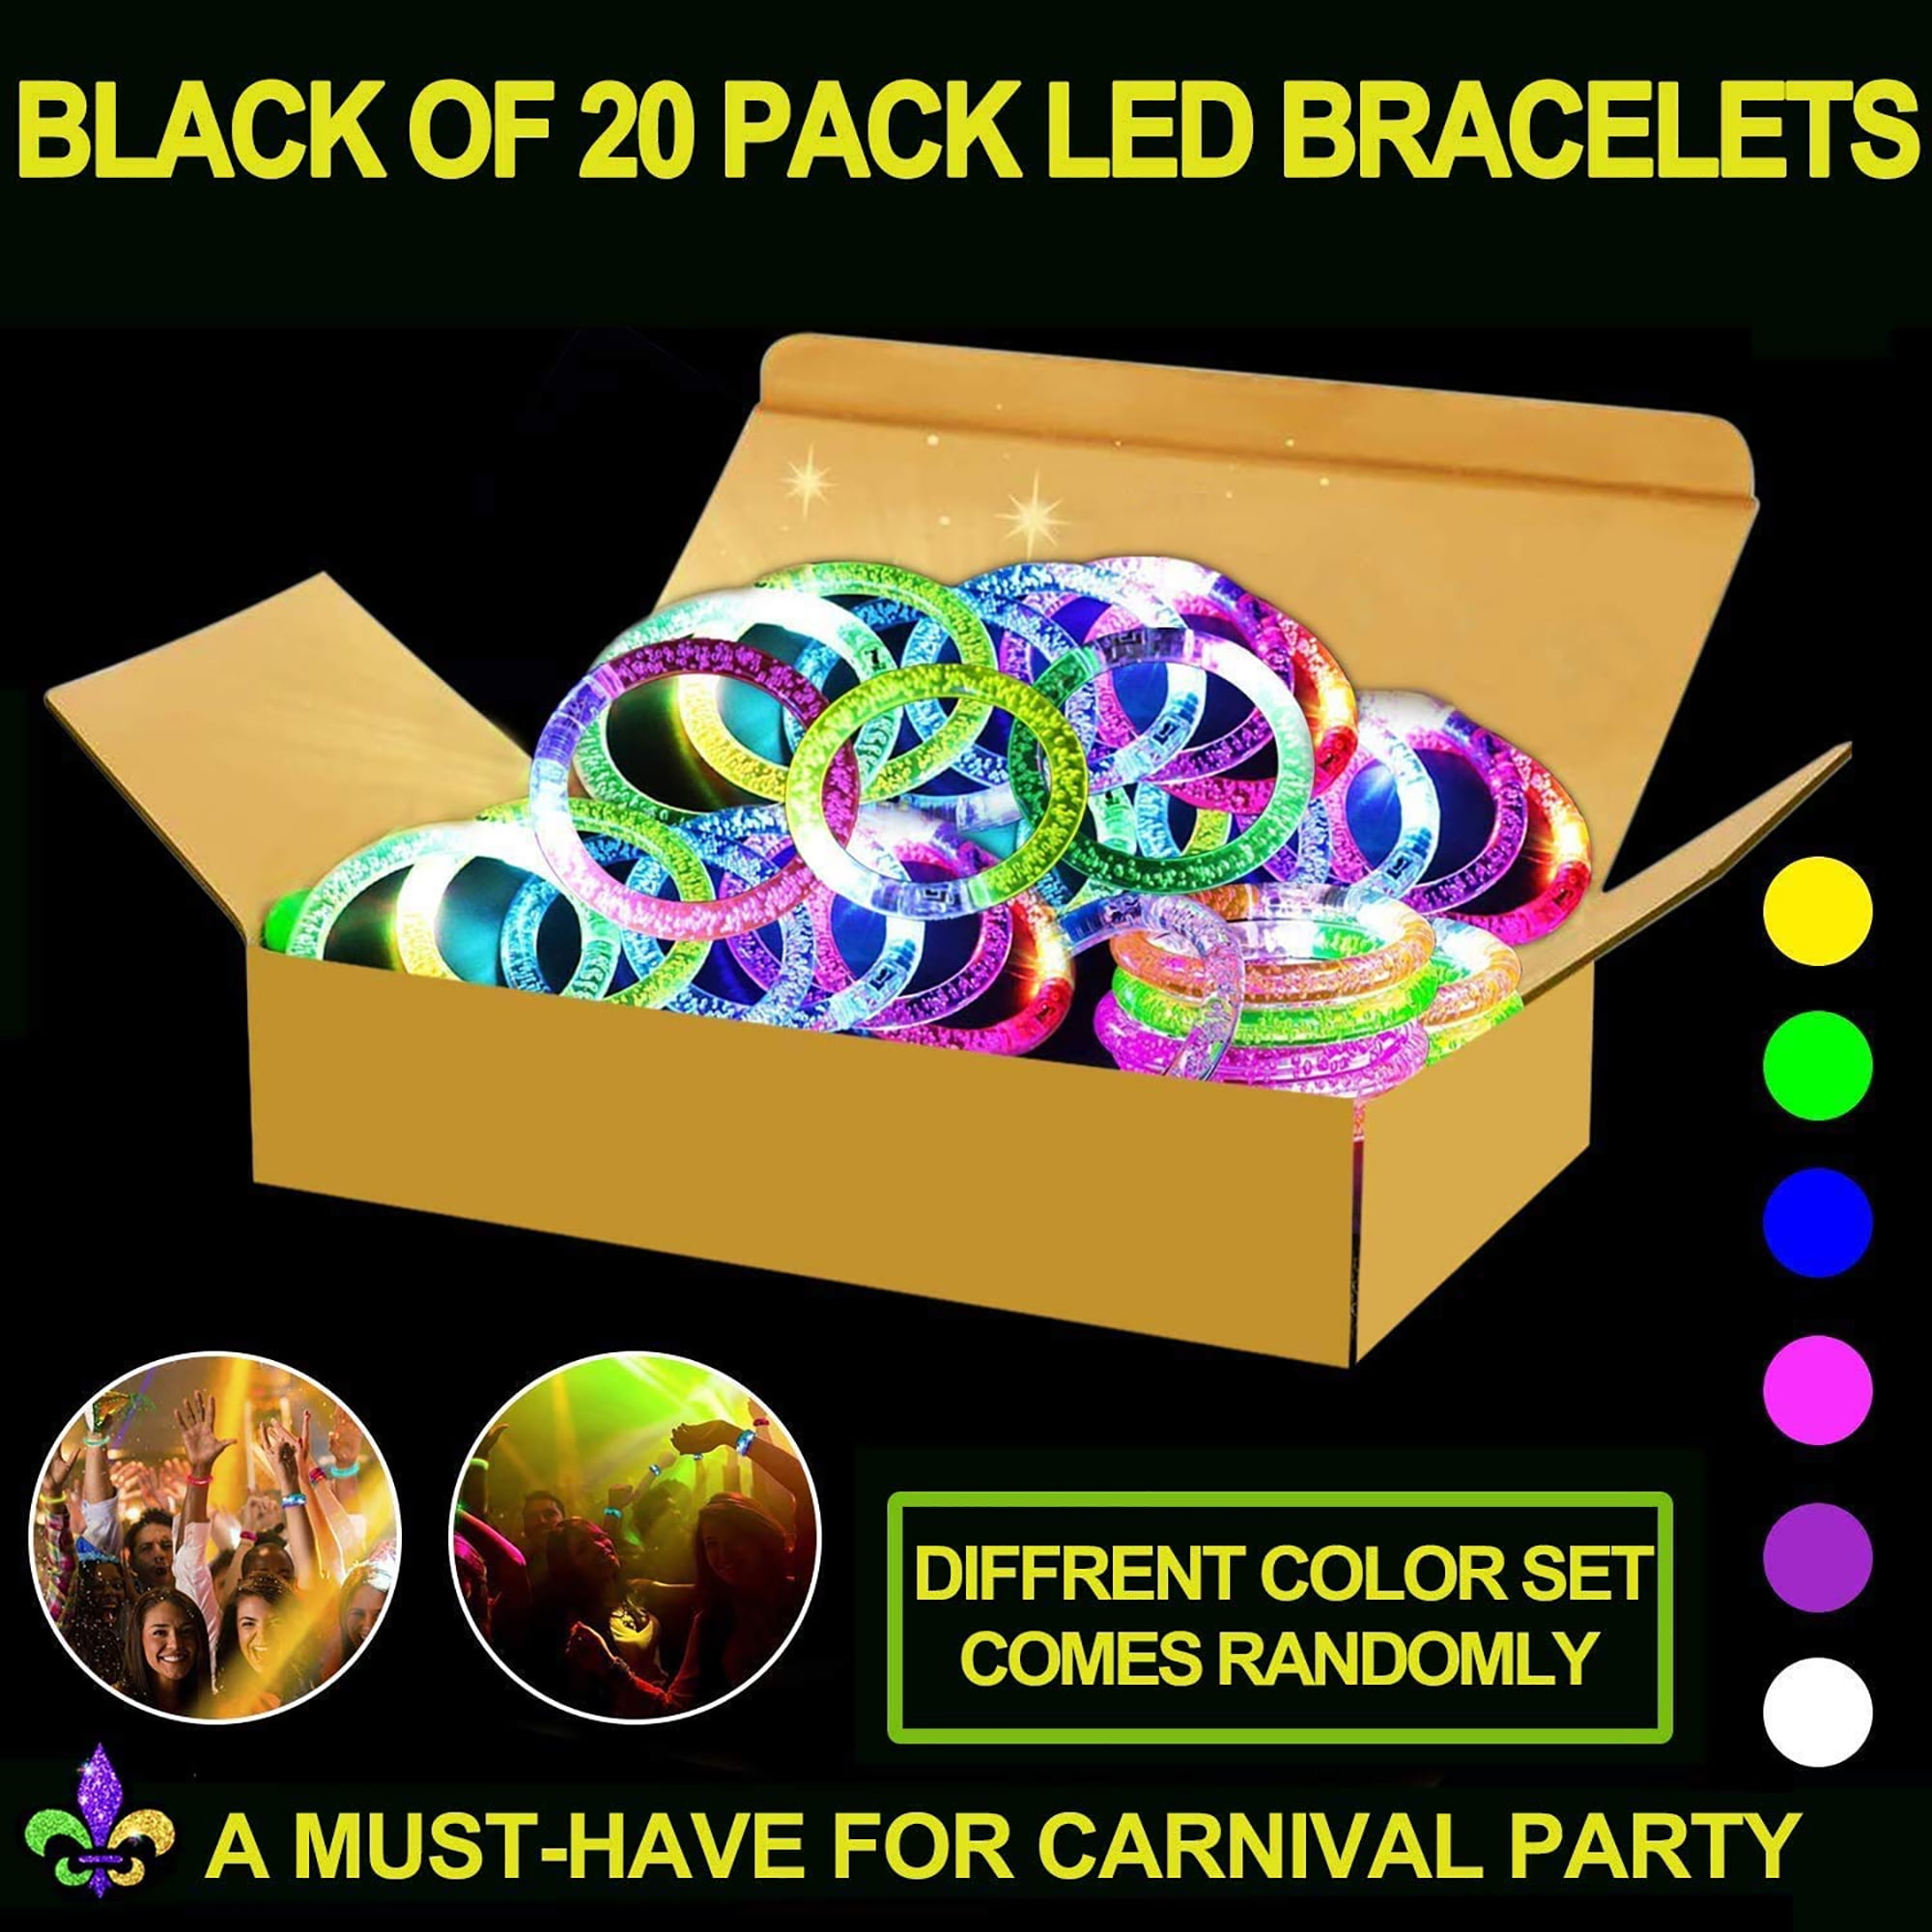 Purple Glow in the Dark Fortune Bracelets - 2 Pack